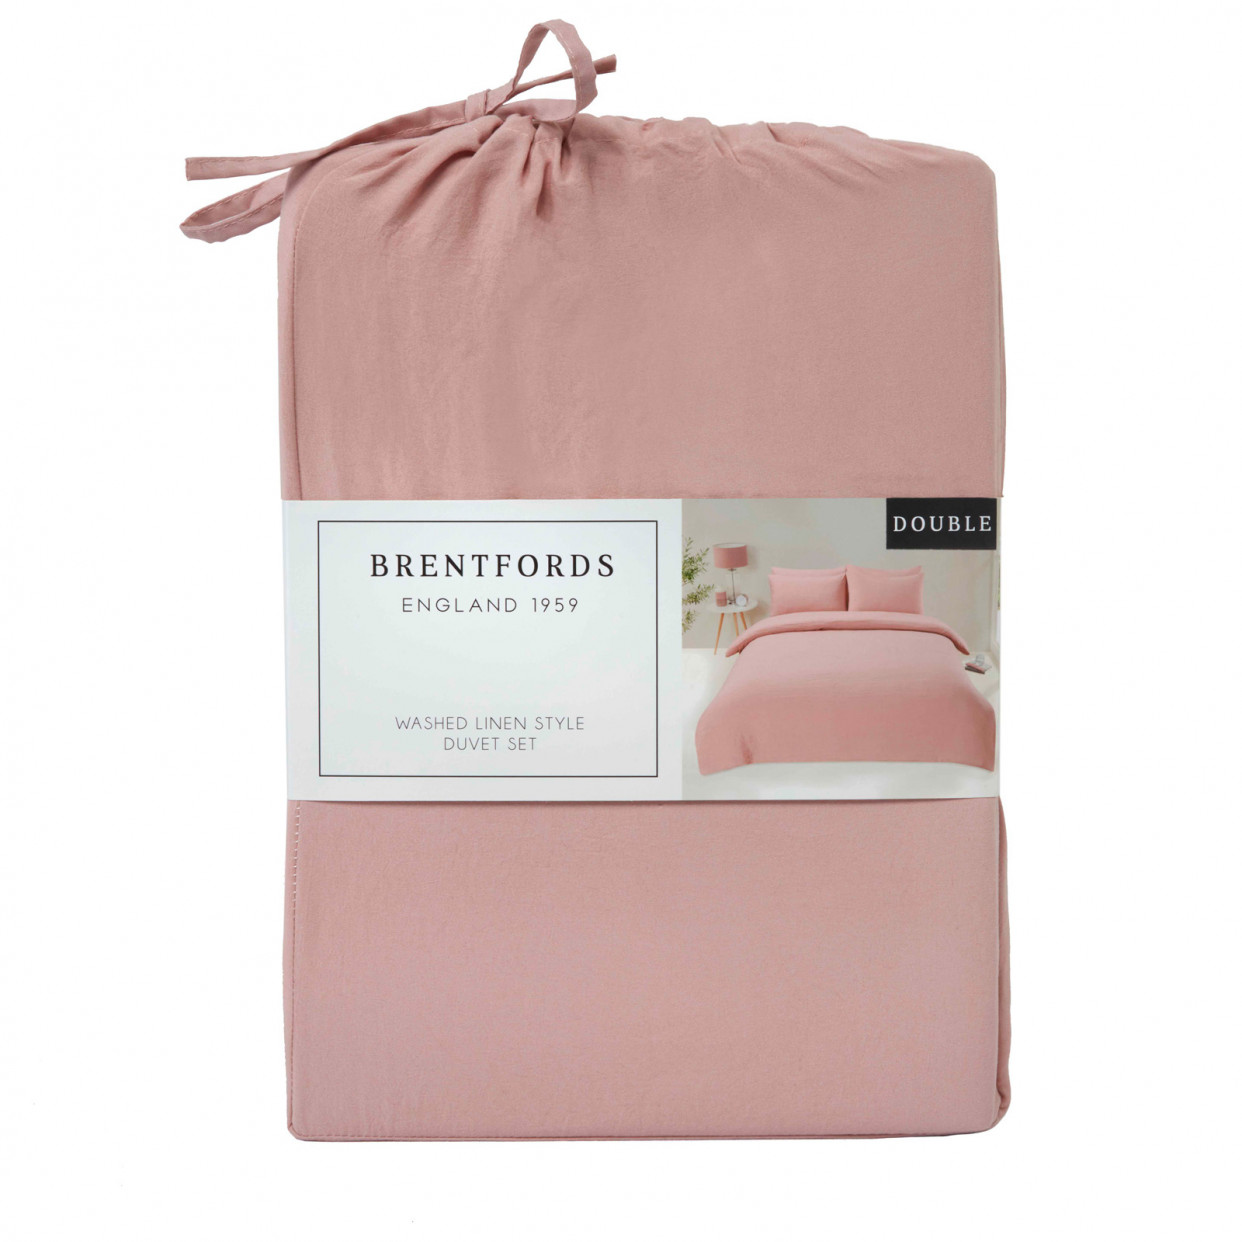 Brentfords Washed Linen Look Duvet Cover Set - Blush>